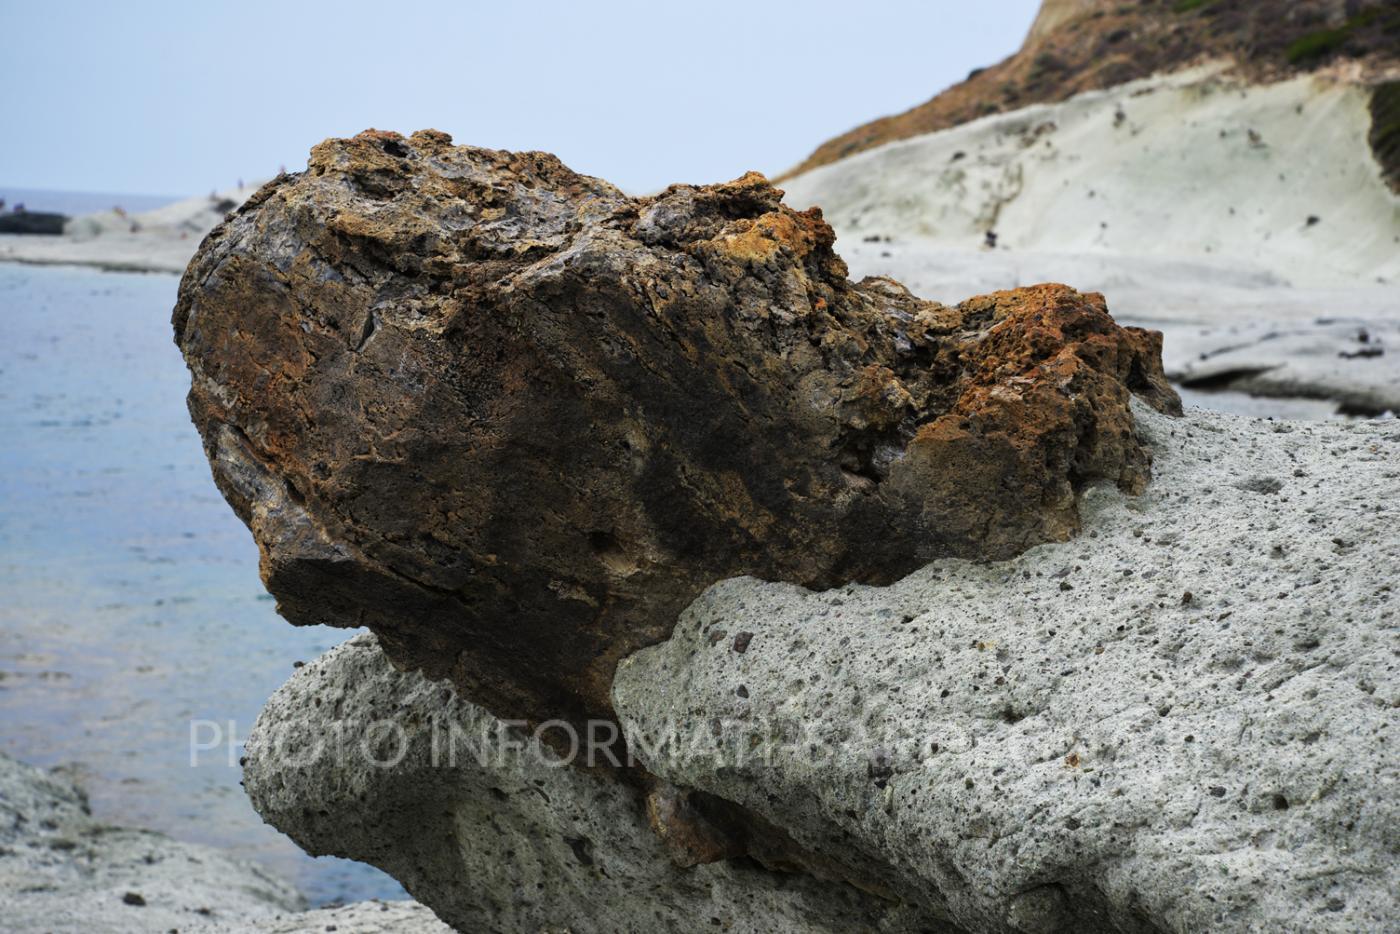 Bosa, Sardegna. Formazioni rocciose lungo costa